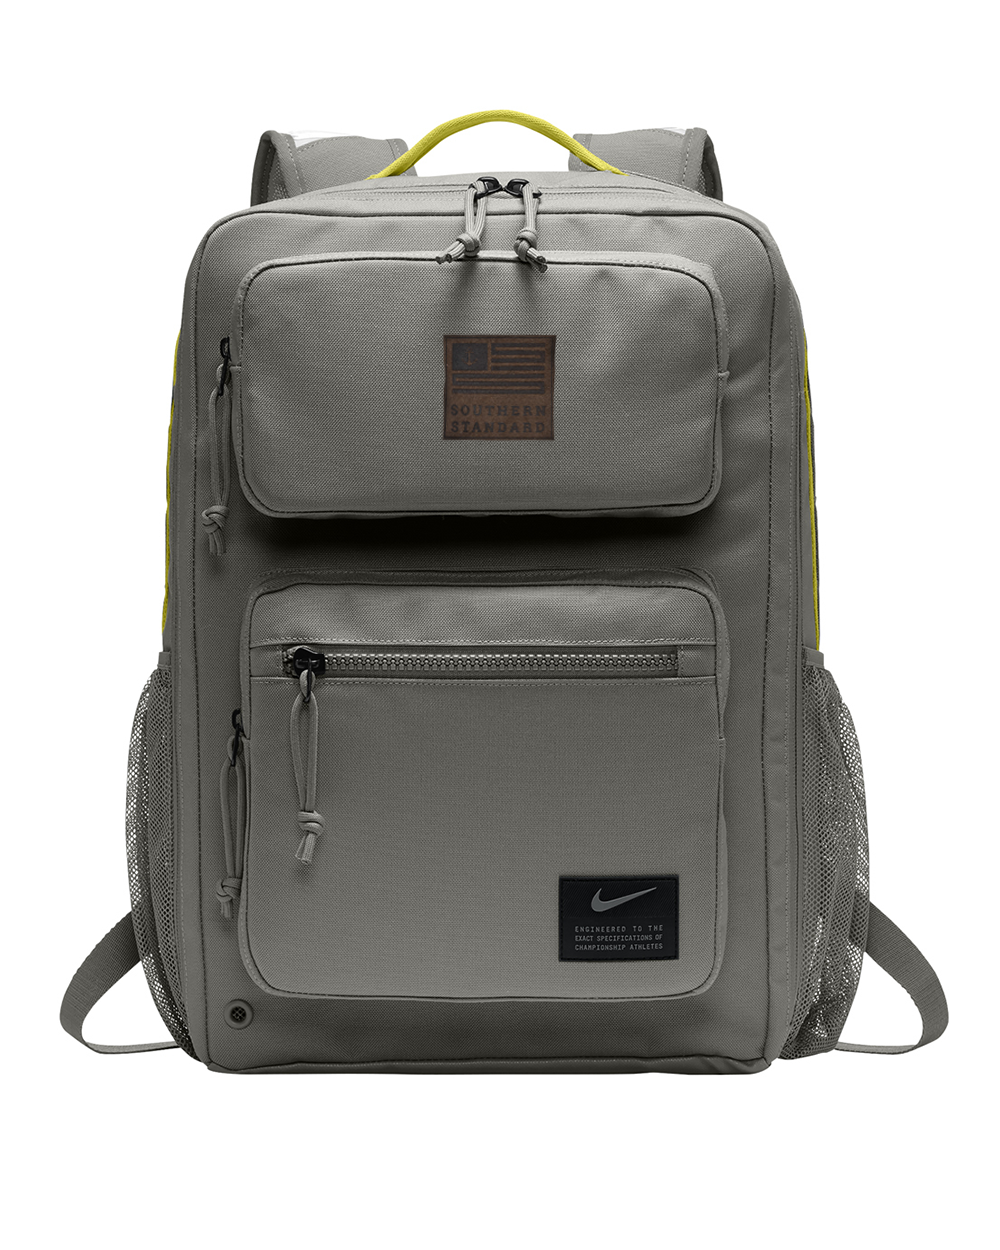 Nike, Bags, Nike Sling Bag Backpack